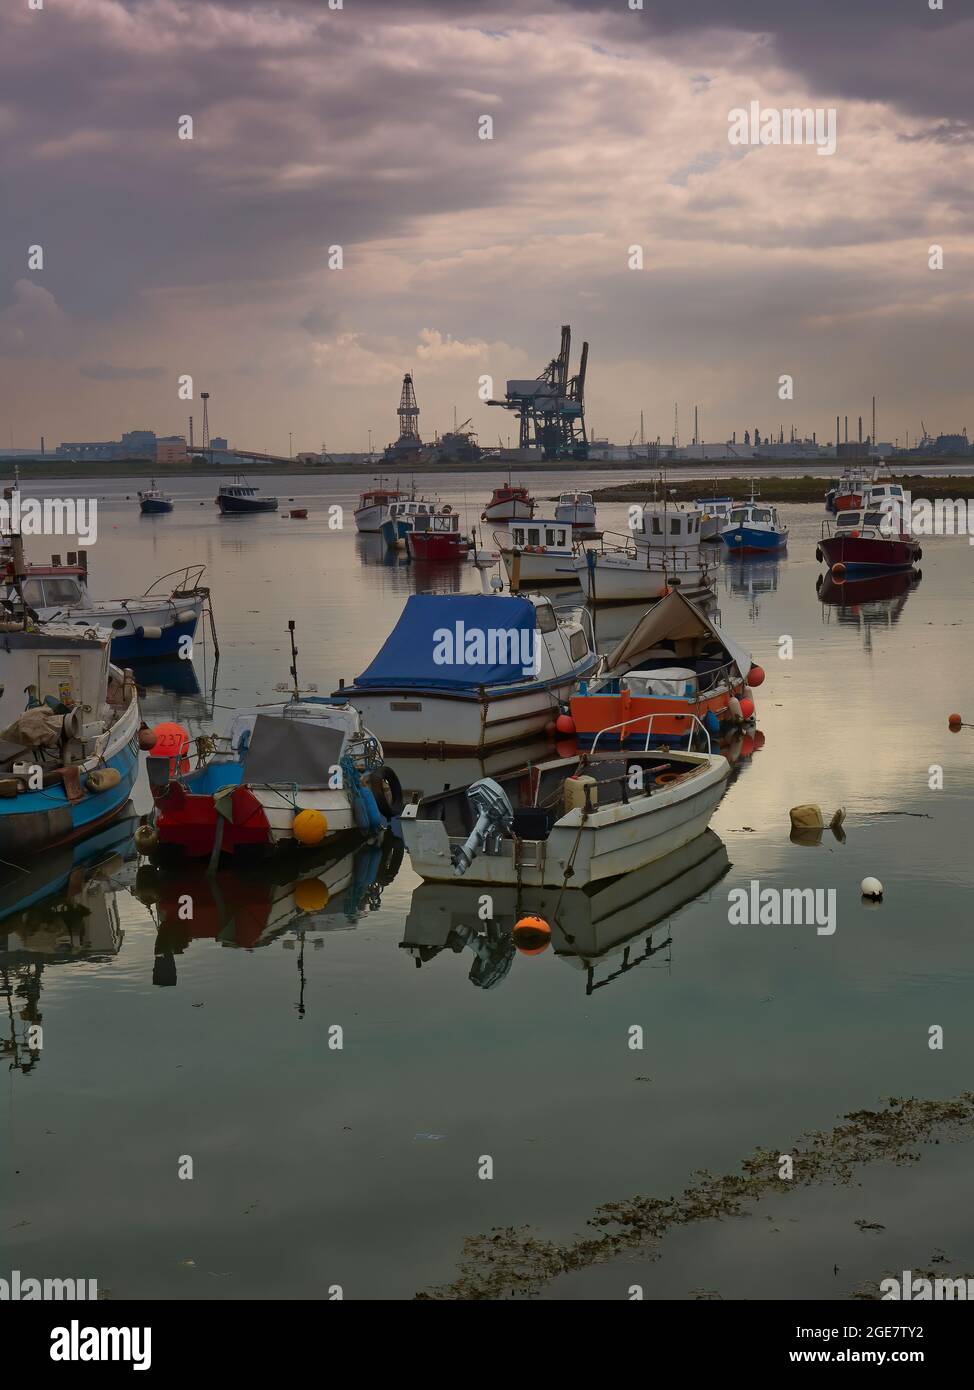 Die kleinen Fischerboote ruhen in den glasigen Gewässern vor dem industriellen Horizont, unter dem bedrohlichen Himmel. Stockfoto